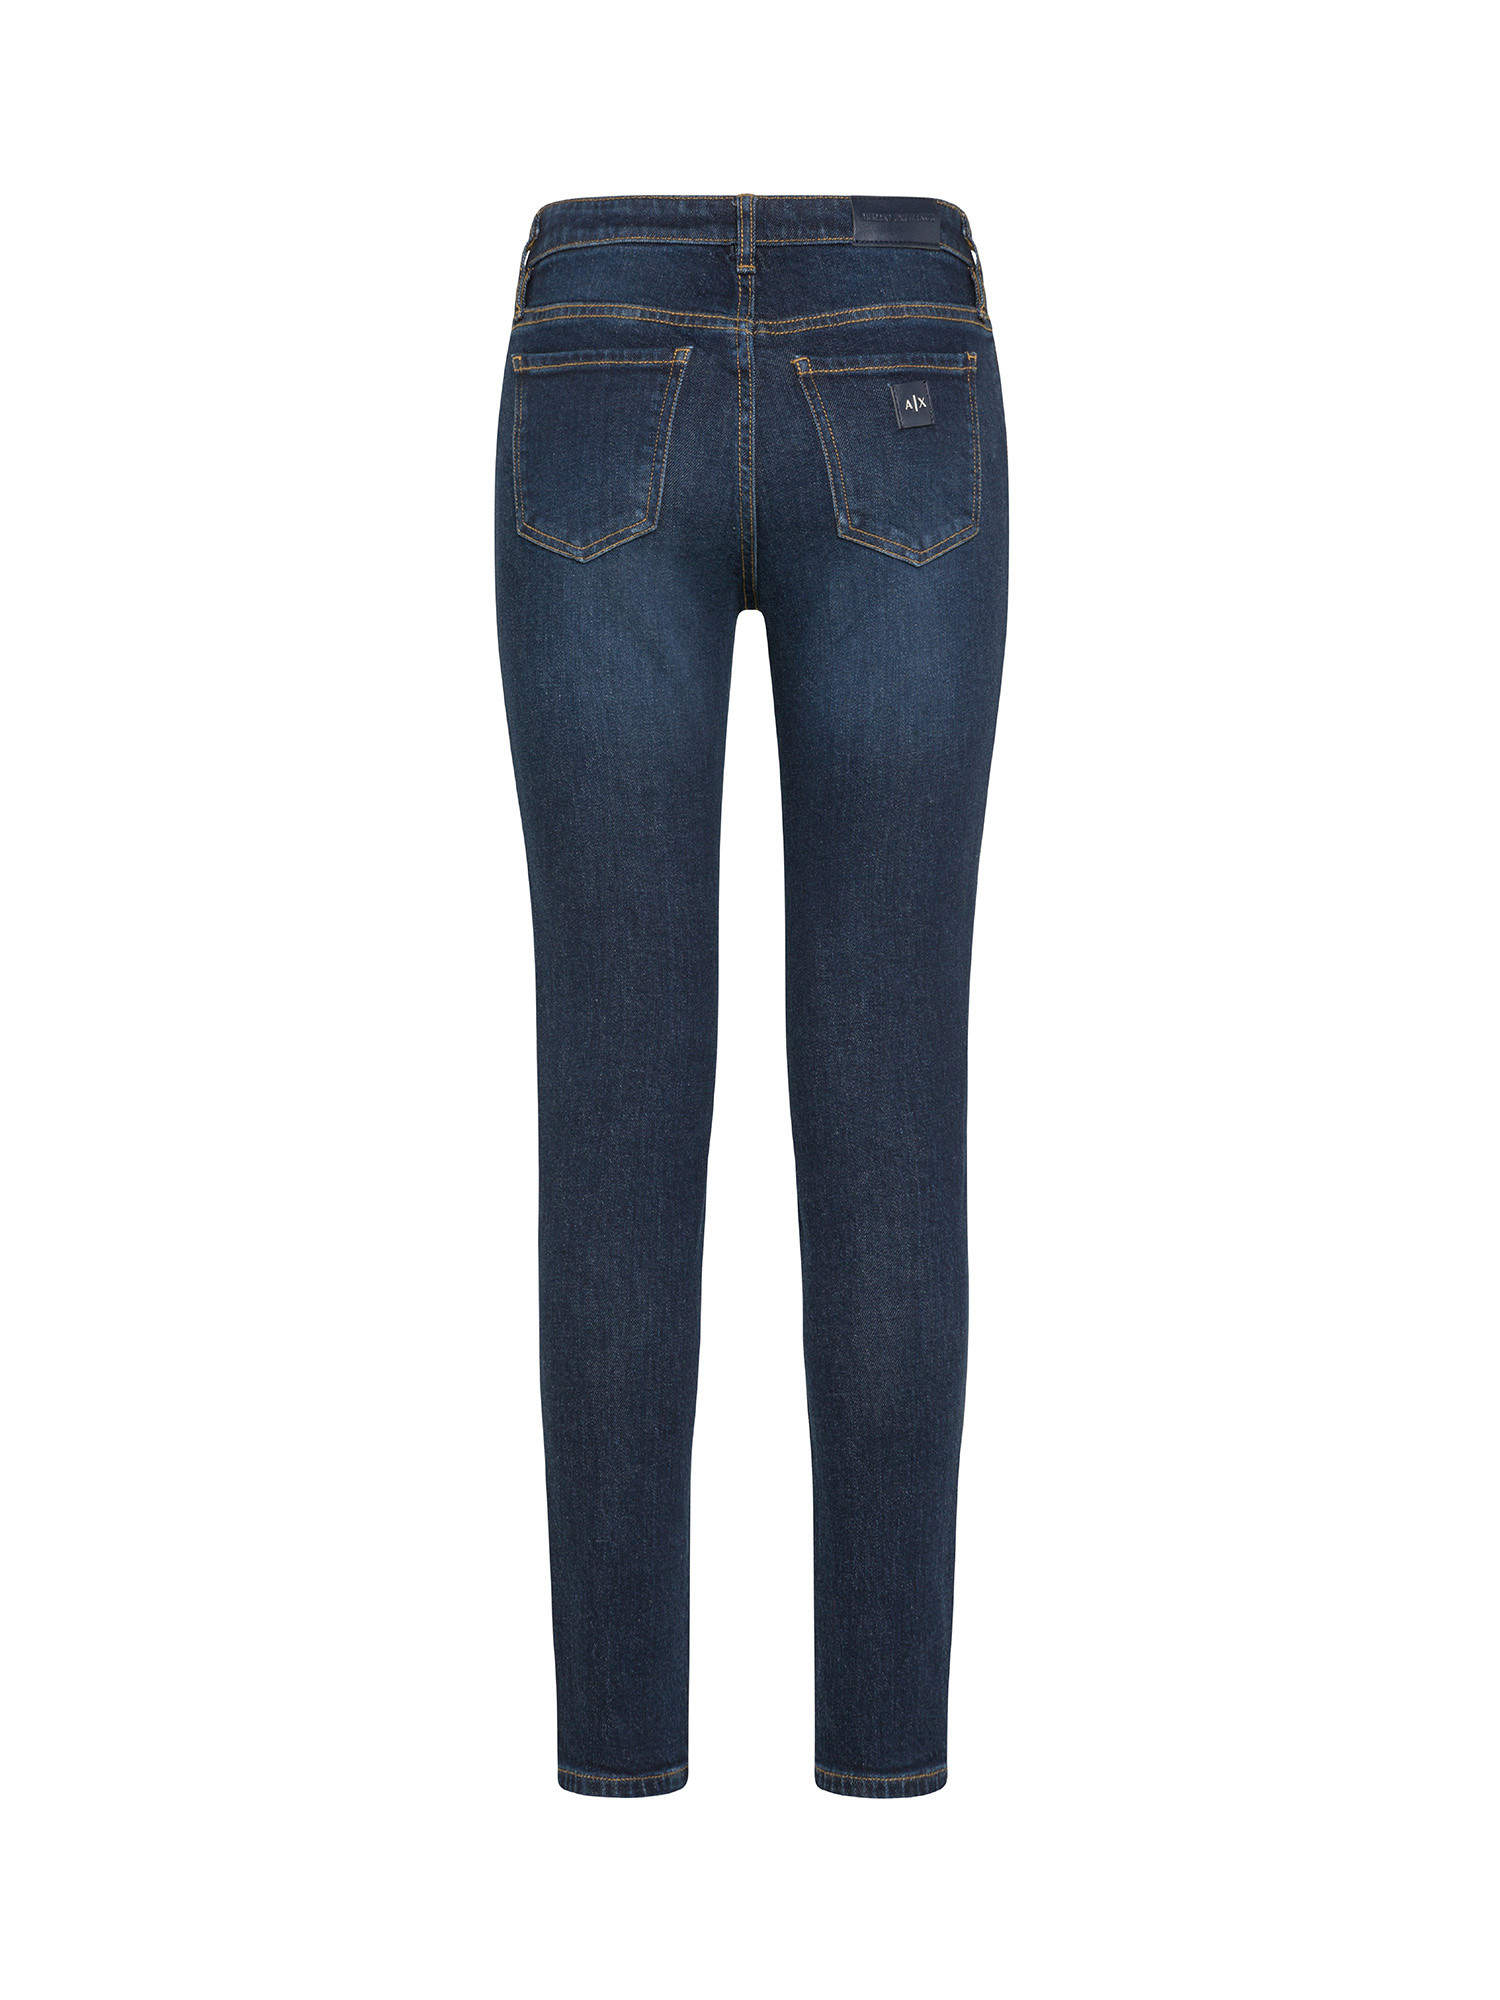 Armani Exchange - Five pocket jeans, Denim, large image number 1